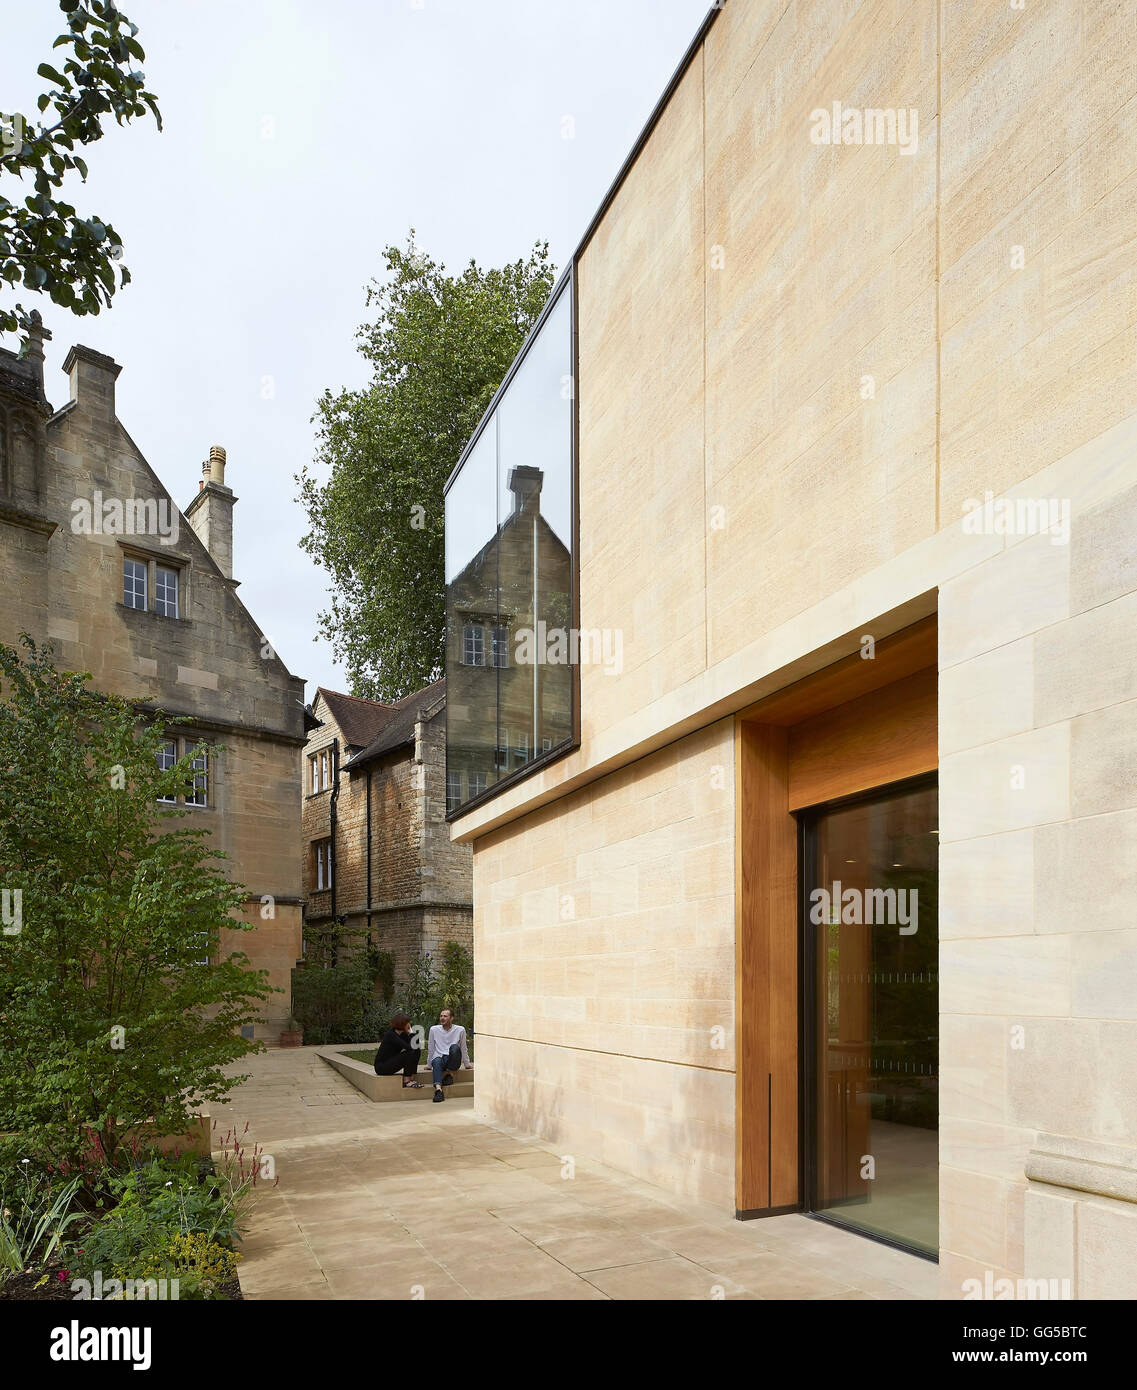 Façade en pierre extérieur le long de la perspective et de vitrage. Le jardin des capacités au Lincoln College, Oxford, Royaume-Uni. Architecte : Stanton Williams, 2015. Banque D'Images